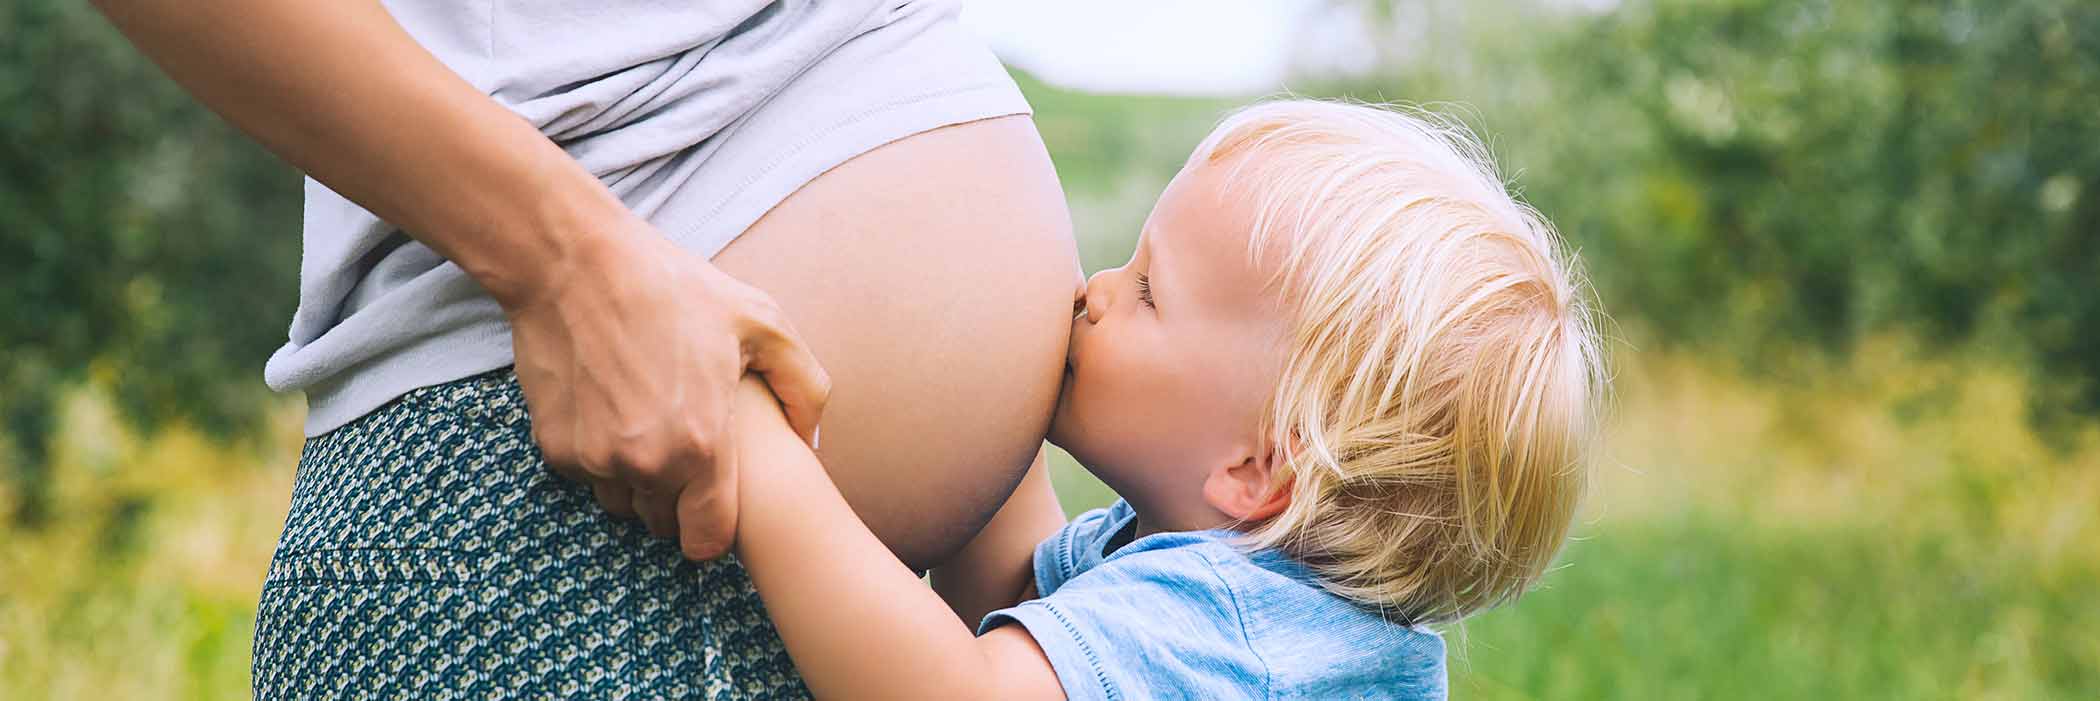 Fertilitetsklinikken Trianglen udfører fertilitetsbehandling med Cryos donorsæd